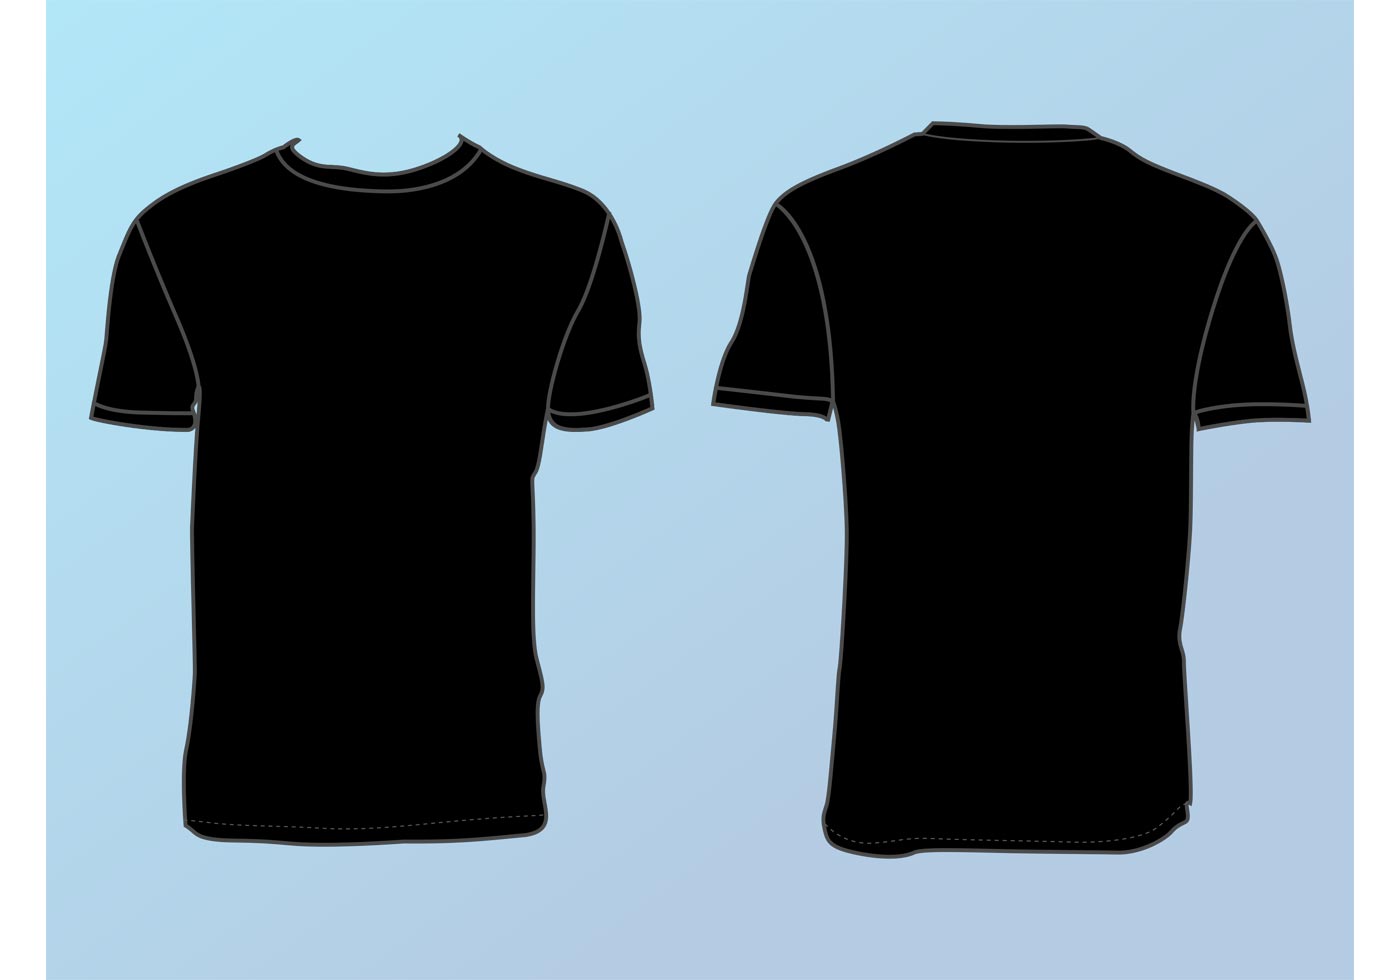 Tshirt Vector: Black Shirt